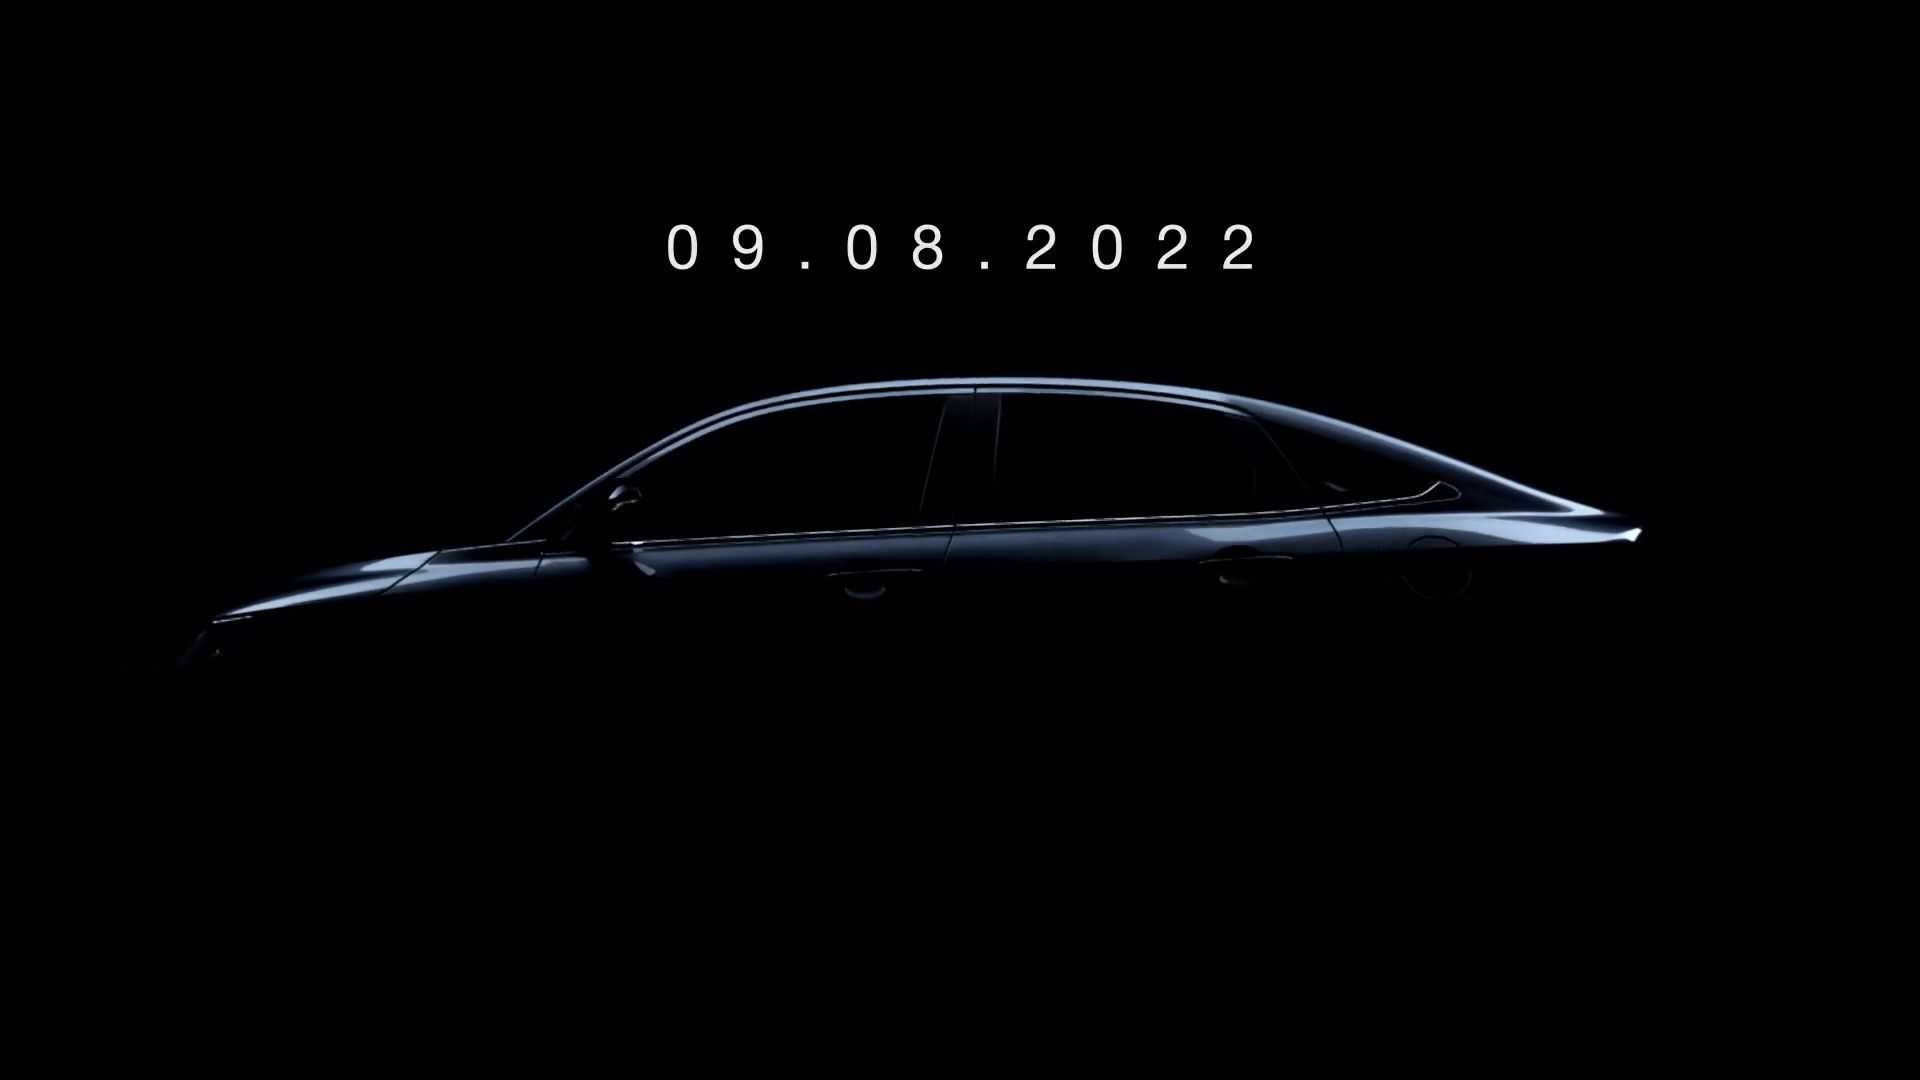 teaser do novo Toyota Yaris mostrando o perfil da carroceria fastback e a data de lançamento